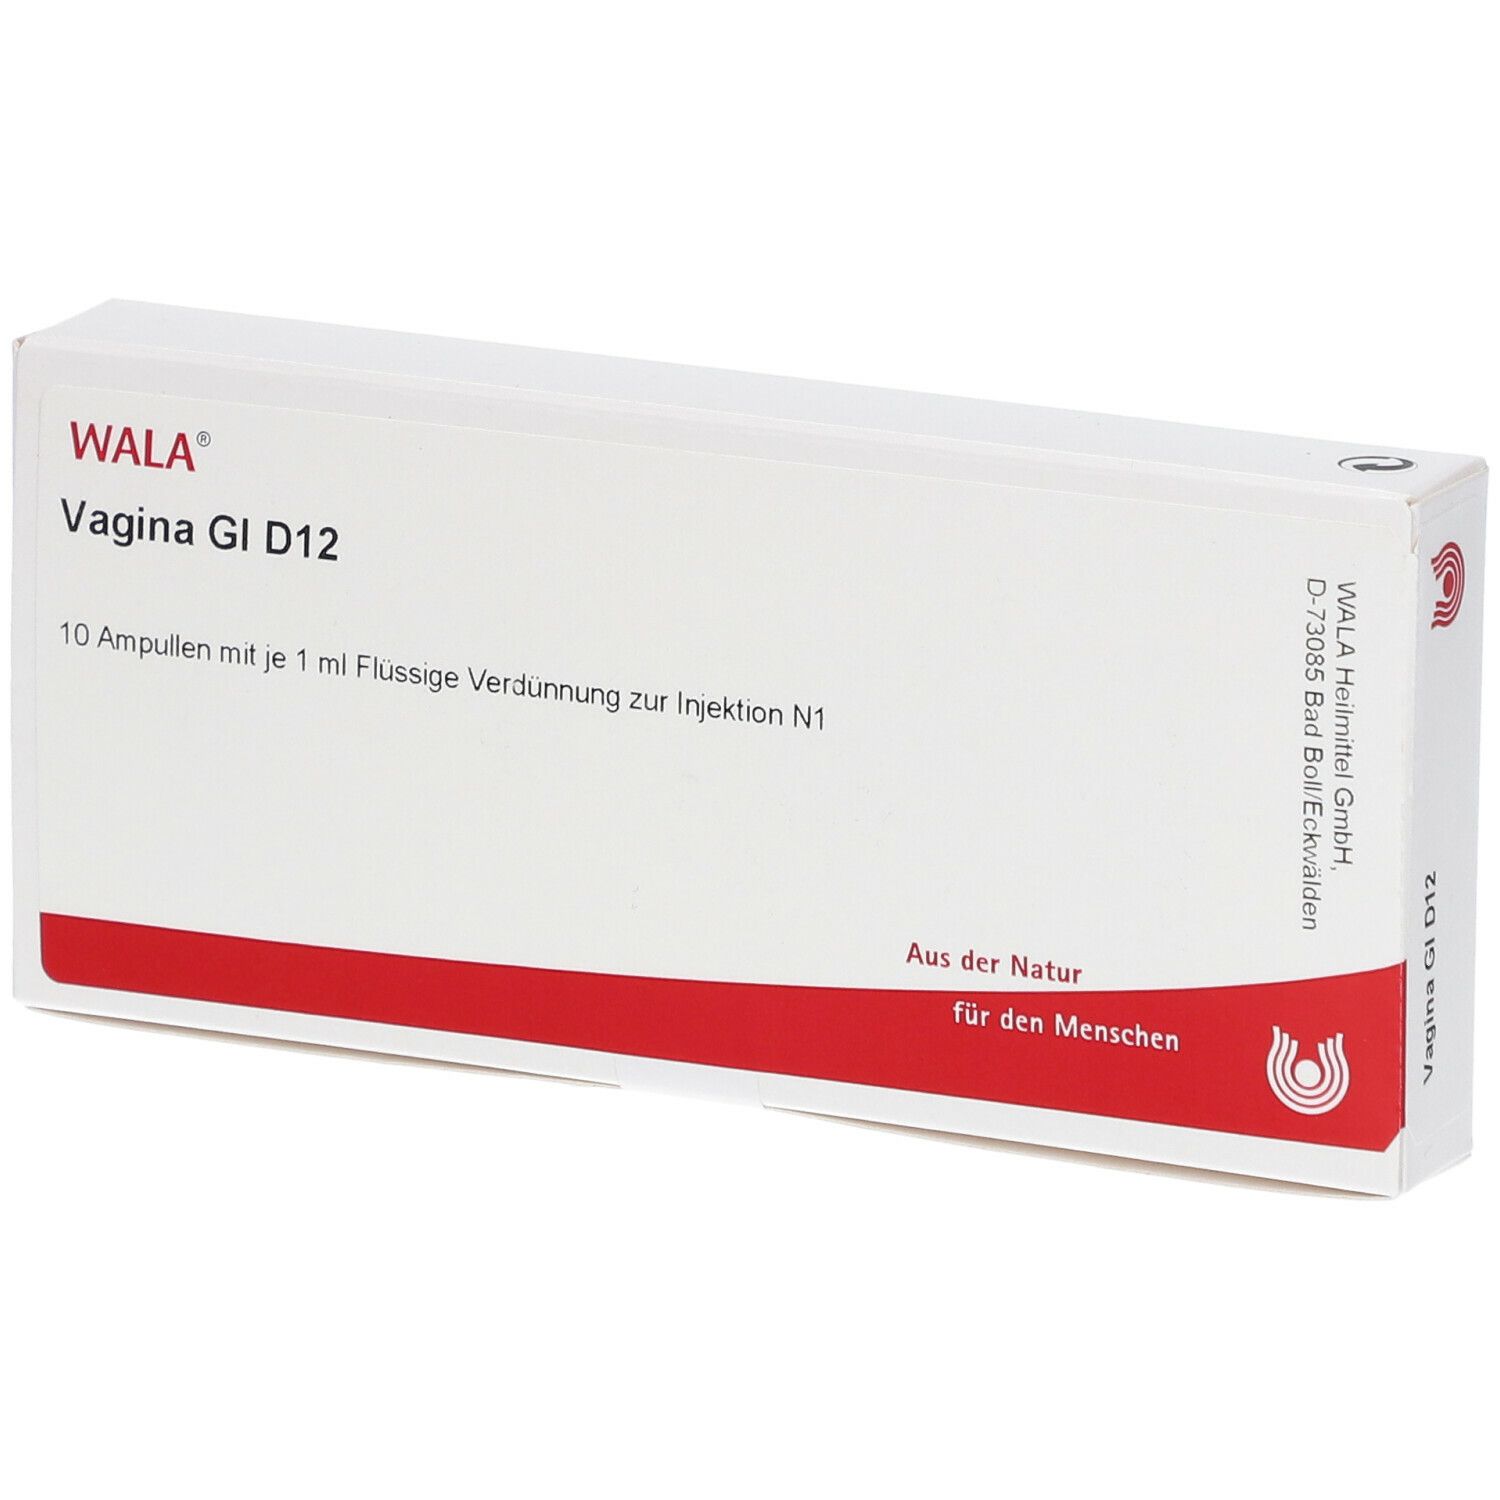 Wala® Vagina Gl D 12